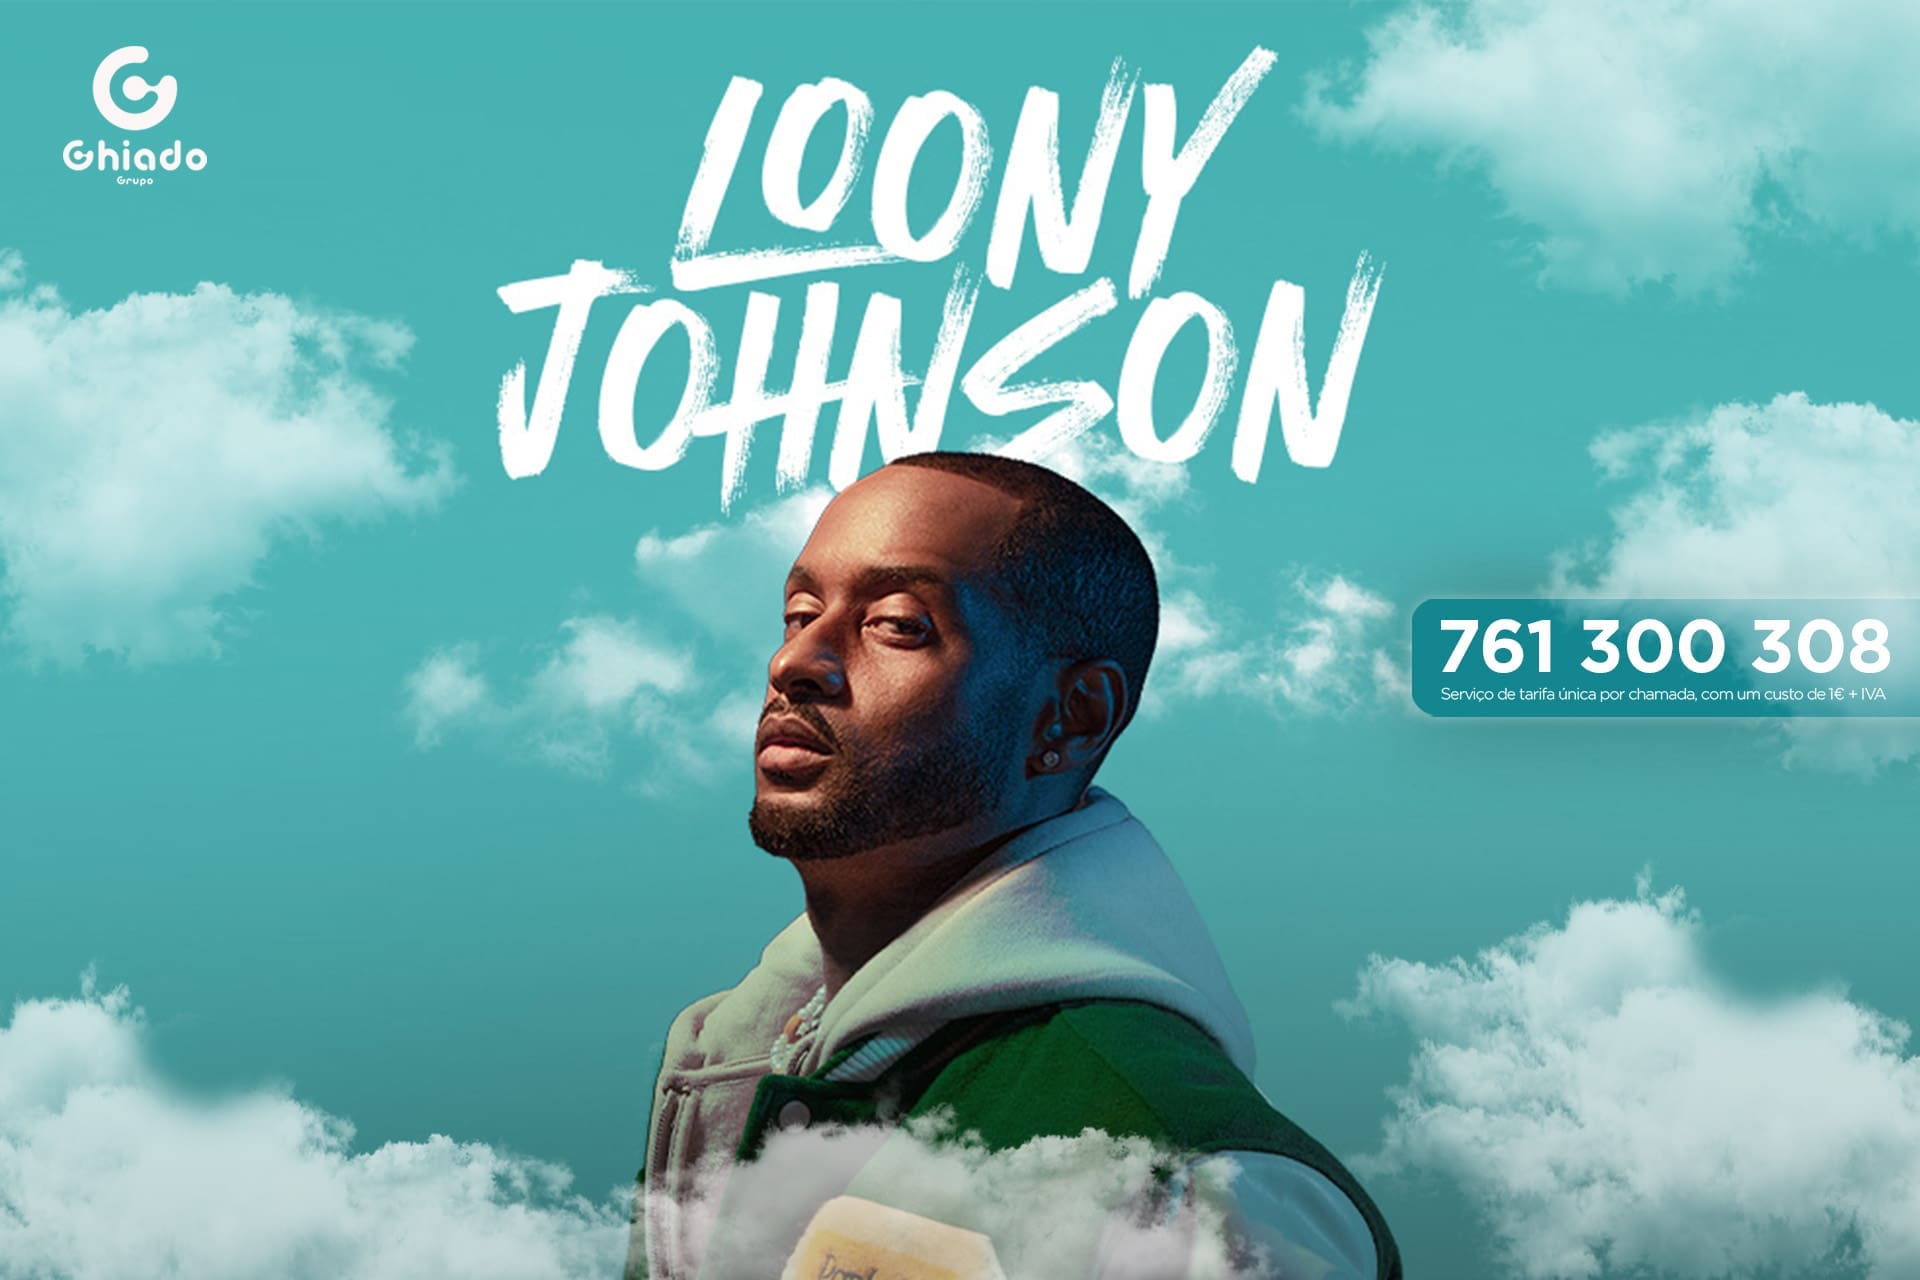 Terminado] A Record TV leva-o ao concerto de Loony Johnson - RECORD EUROPA